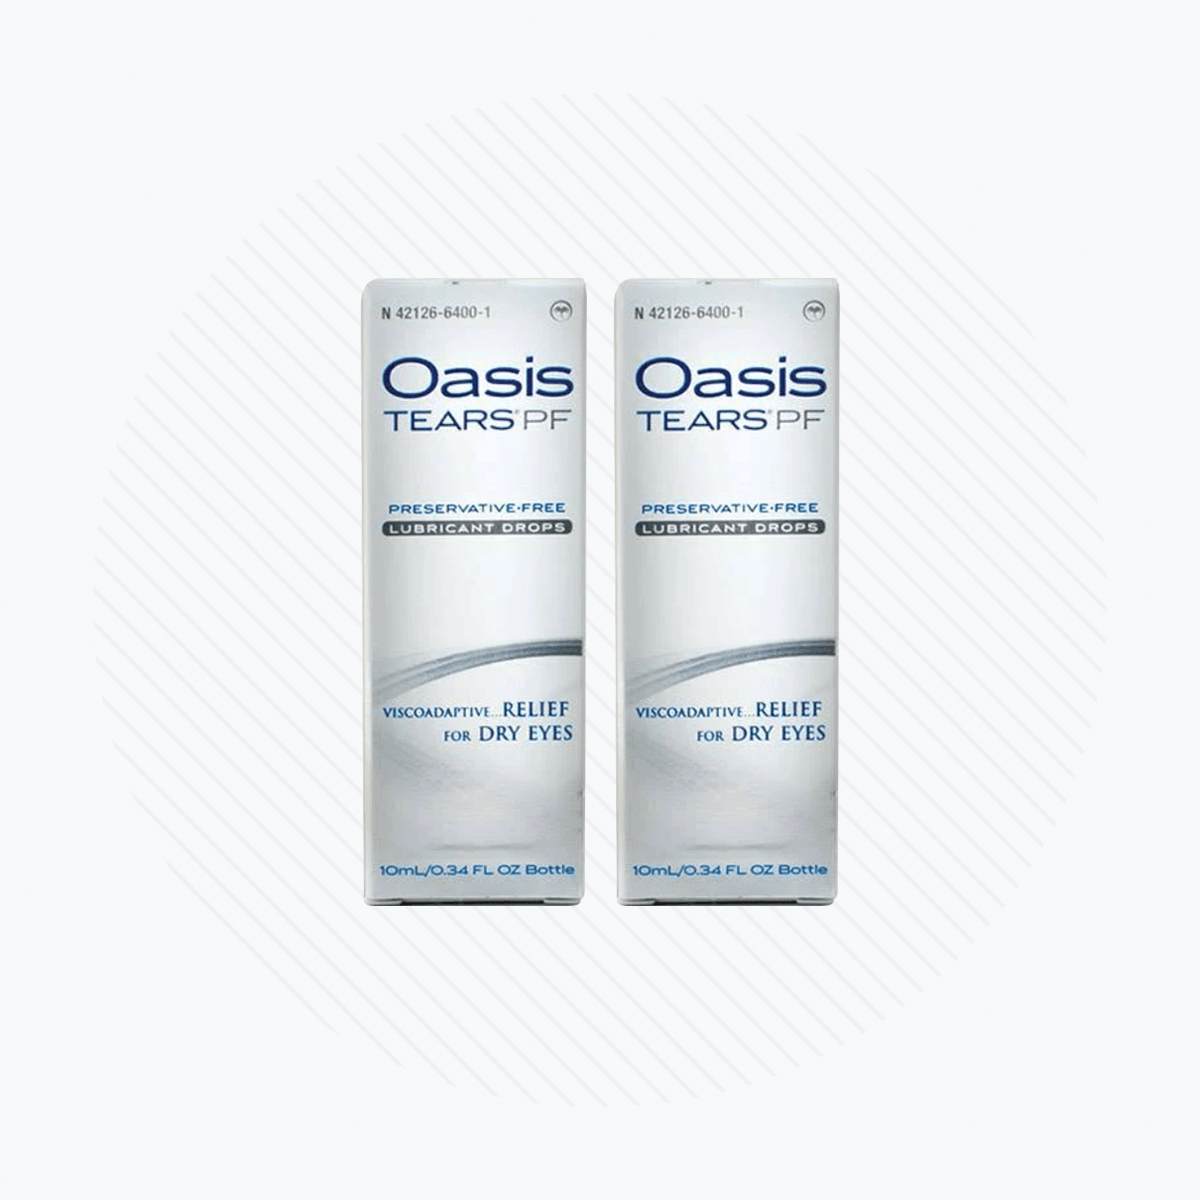 Oasis Tears Preservative-Free Eye Drops (Multi-drop Bottle) 2-Pack 600 drops - Dryeye Rescue